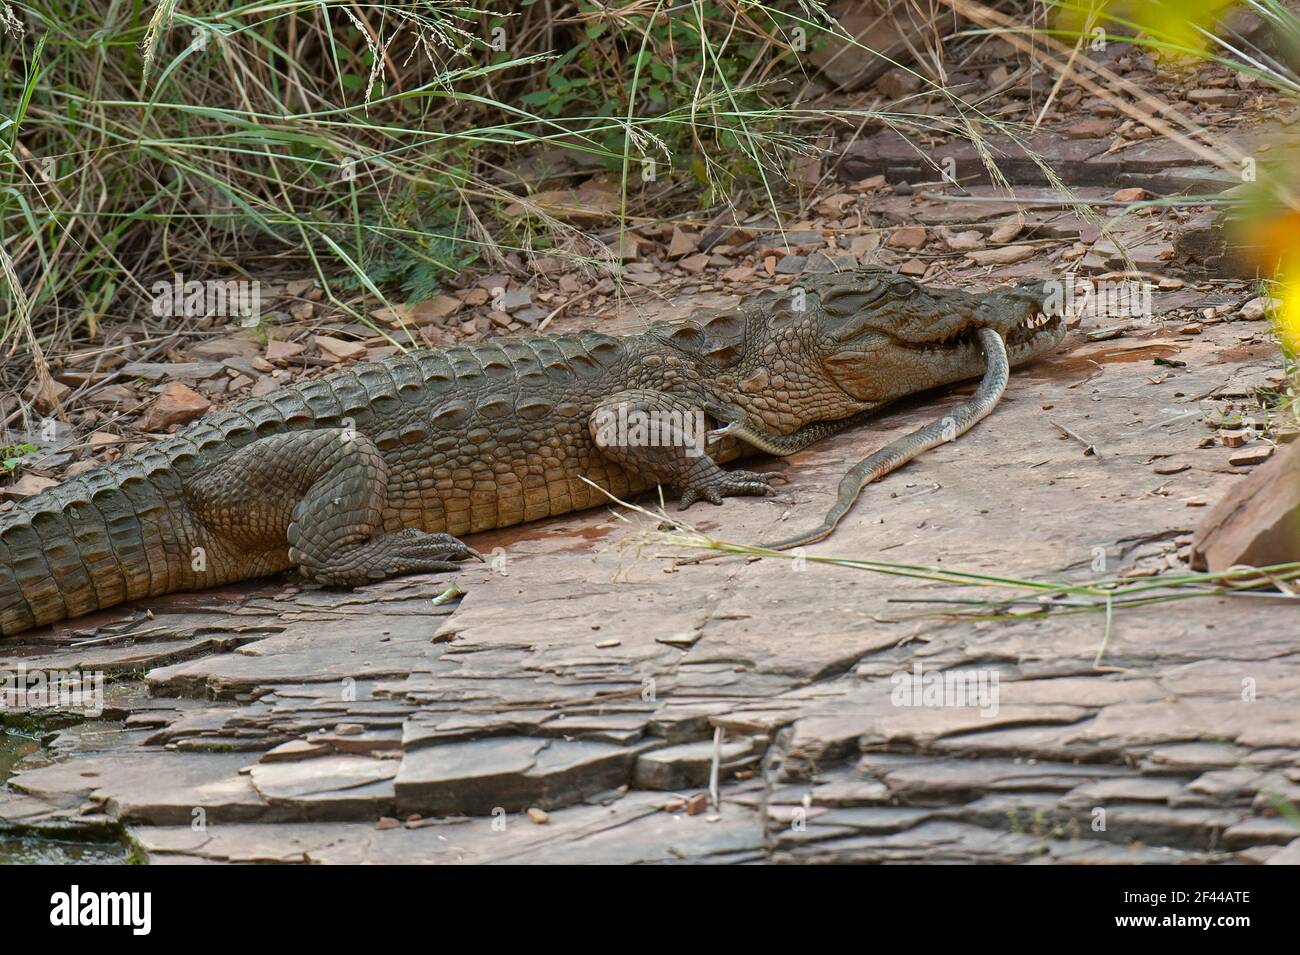 Crocodile du marais indien, manger du serpent à dos de Keelback à carreaux, parc national de Ranthambore, réserve naturelle, Ranthambhore, Sawai Madhopur, Rajasthan, Inde, Asie Banque D'Images